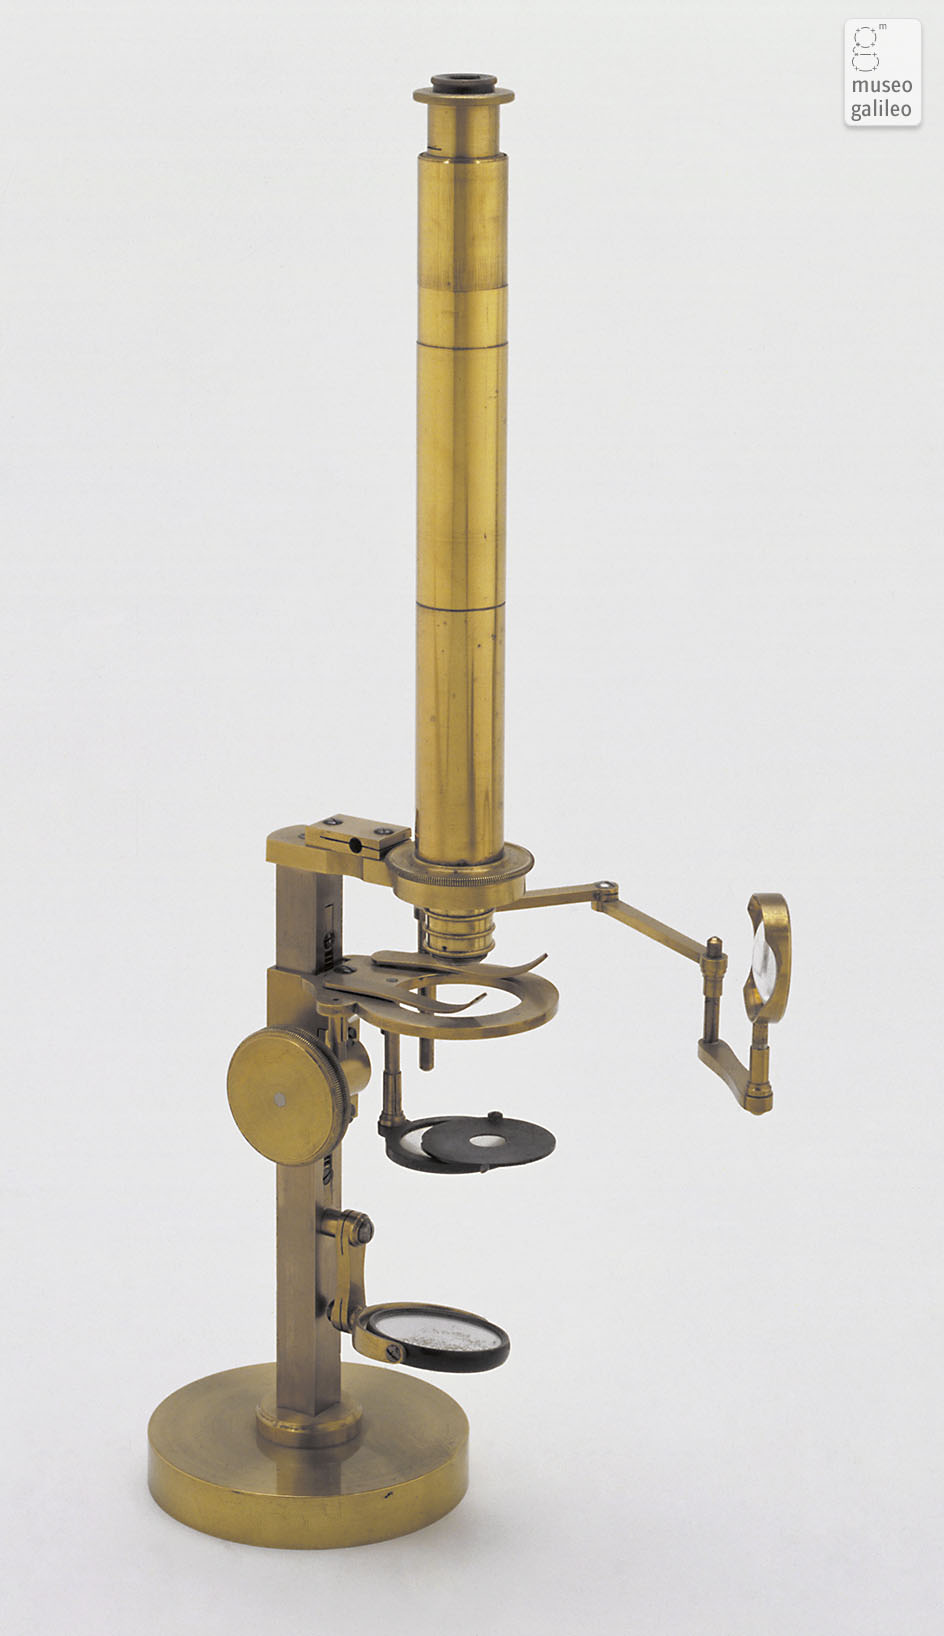 Compound microscope (Inv. 2649)